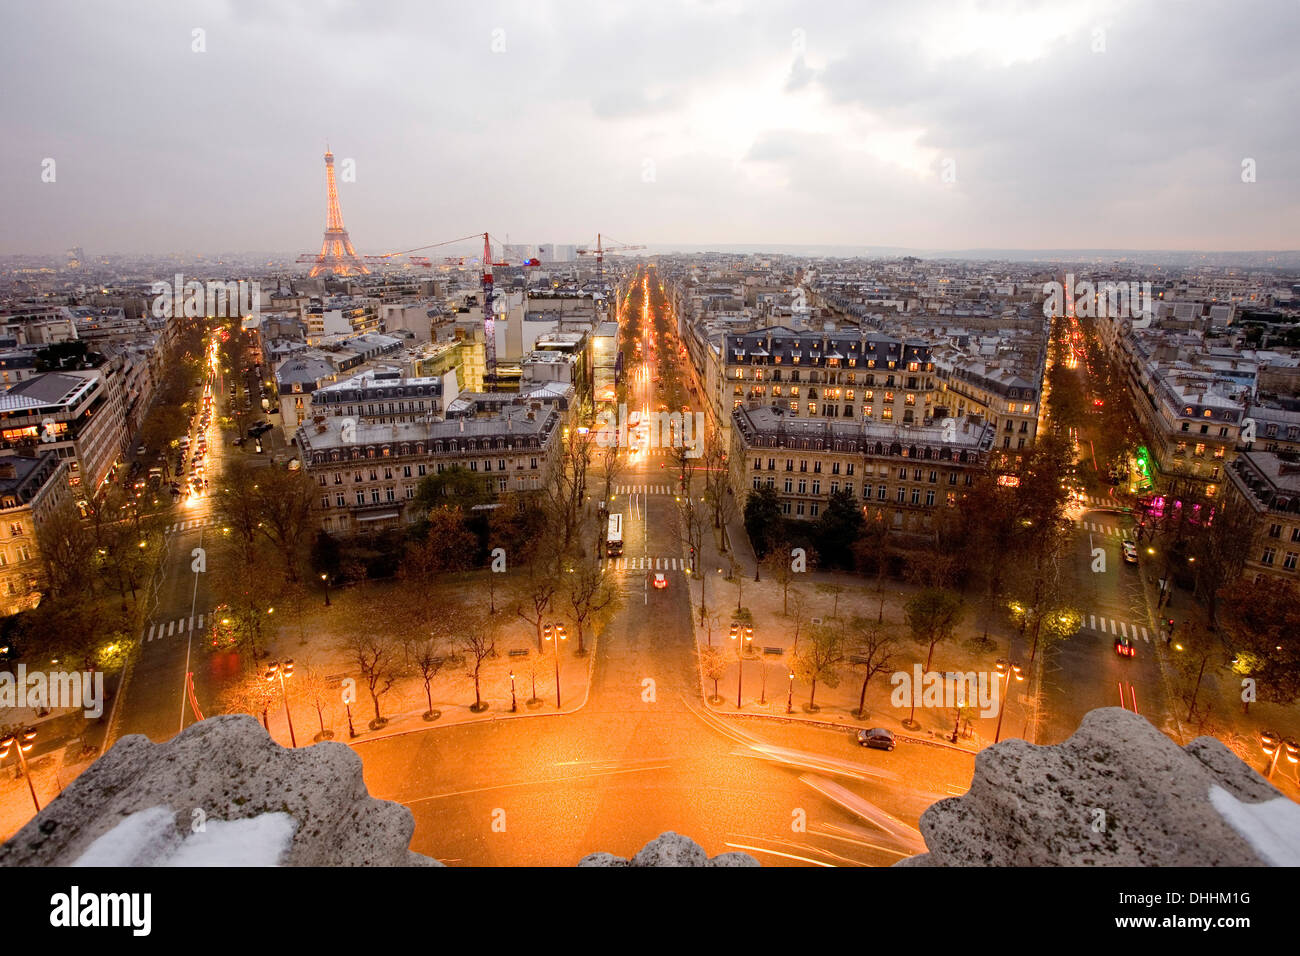 View from the Arc de Triomphe, Place Charles de Gaulle square, Paris, Ile-de-France, France Stock Photo